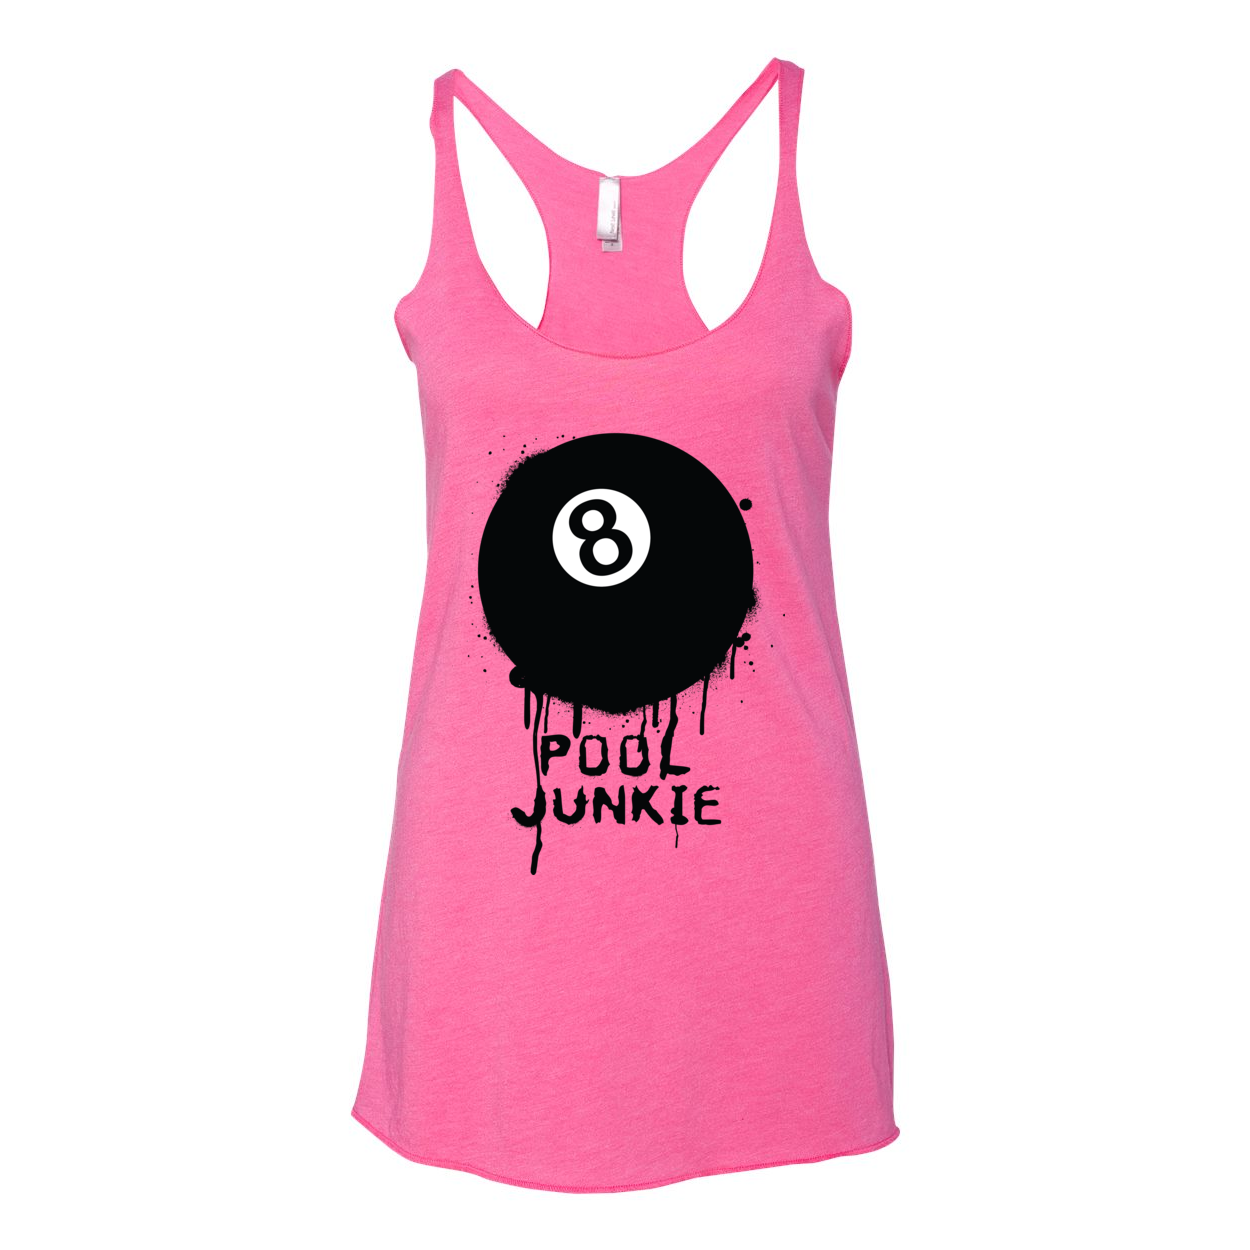 Pool Junkie Women’s Triblend Racerback Tank